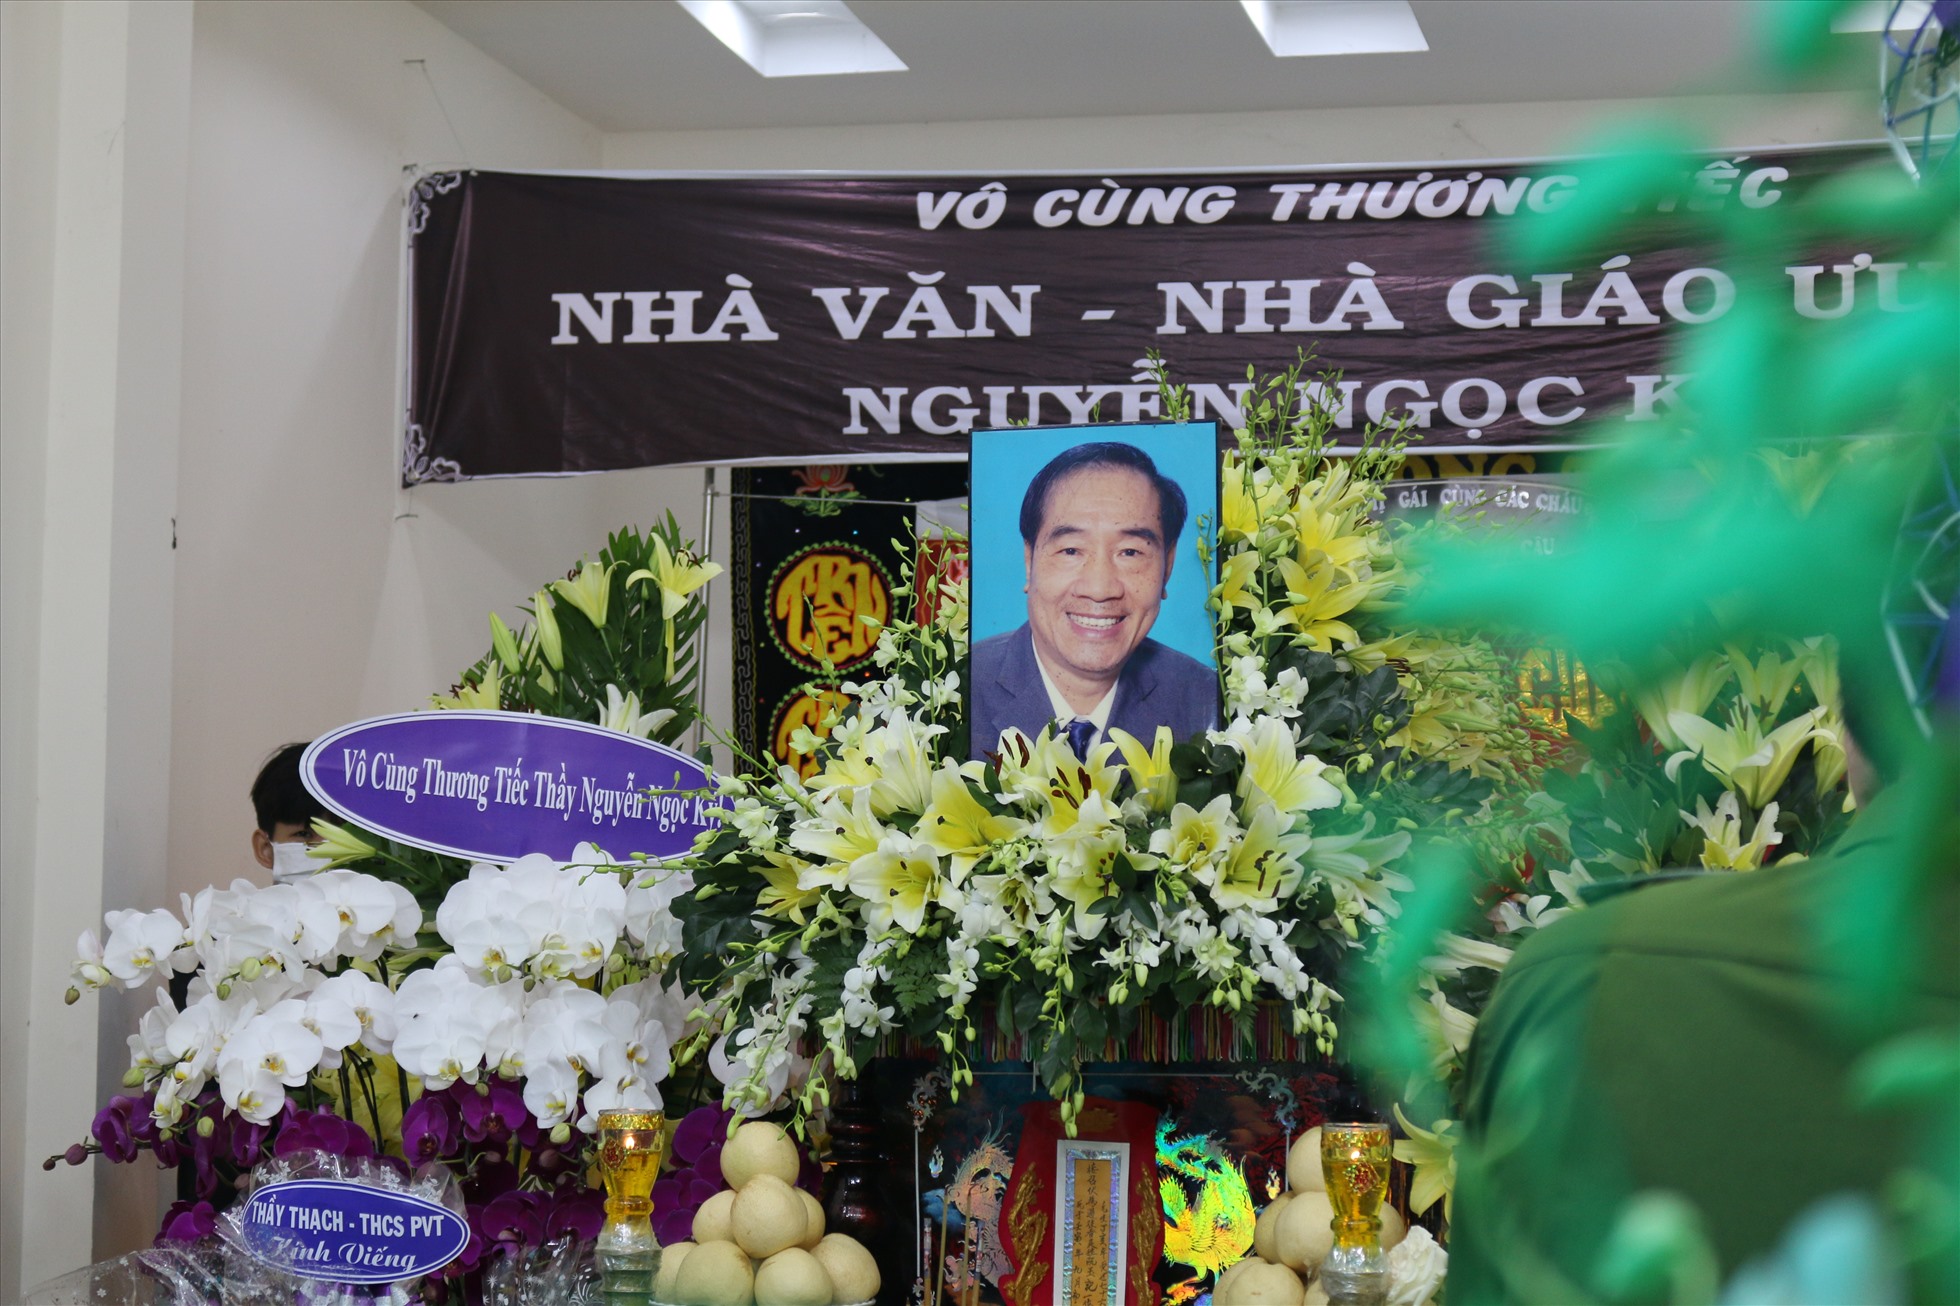 Theo thông tin từ gia đình, thầy giáo Nguyễn Ngọc Ký từ trần rạng sáng ngày 28.9 tại nhà riêng, sau hơn 29 năm chiến đấu với bệnh suy thận. Tang lễ của ông được tổ chức ở nhà riêng tại phường Phước Long B, thành phố Thủ Đức, TP.HCM từ 8h sáng nay.